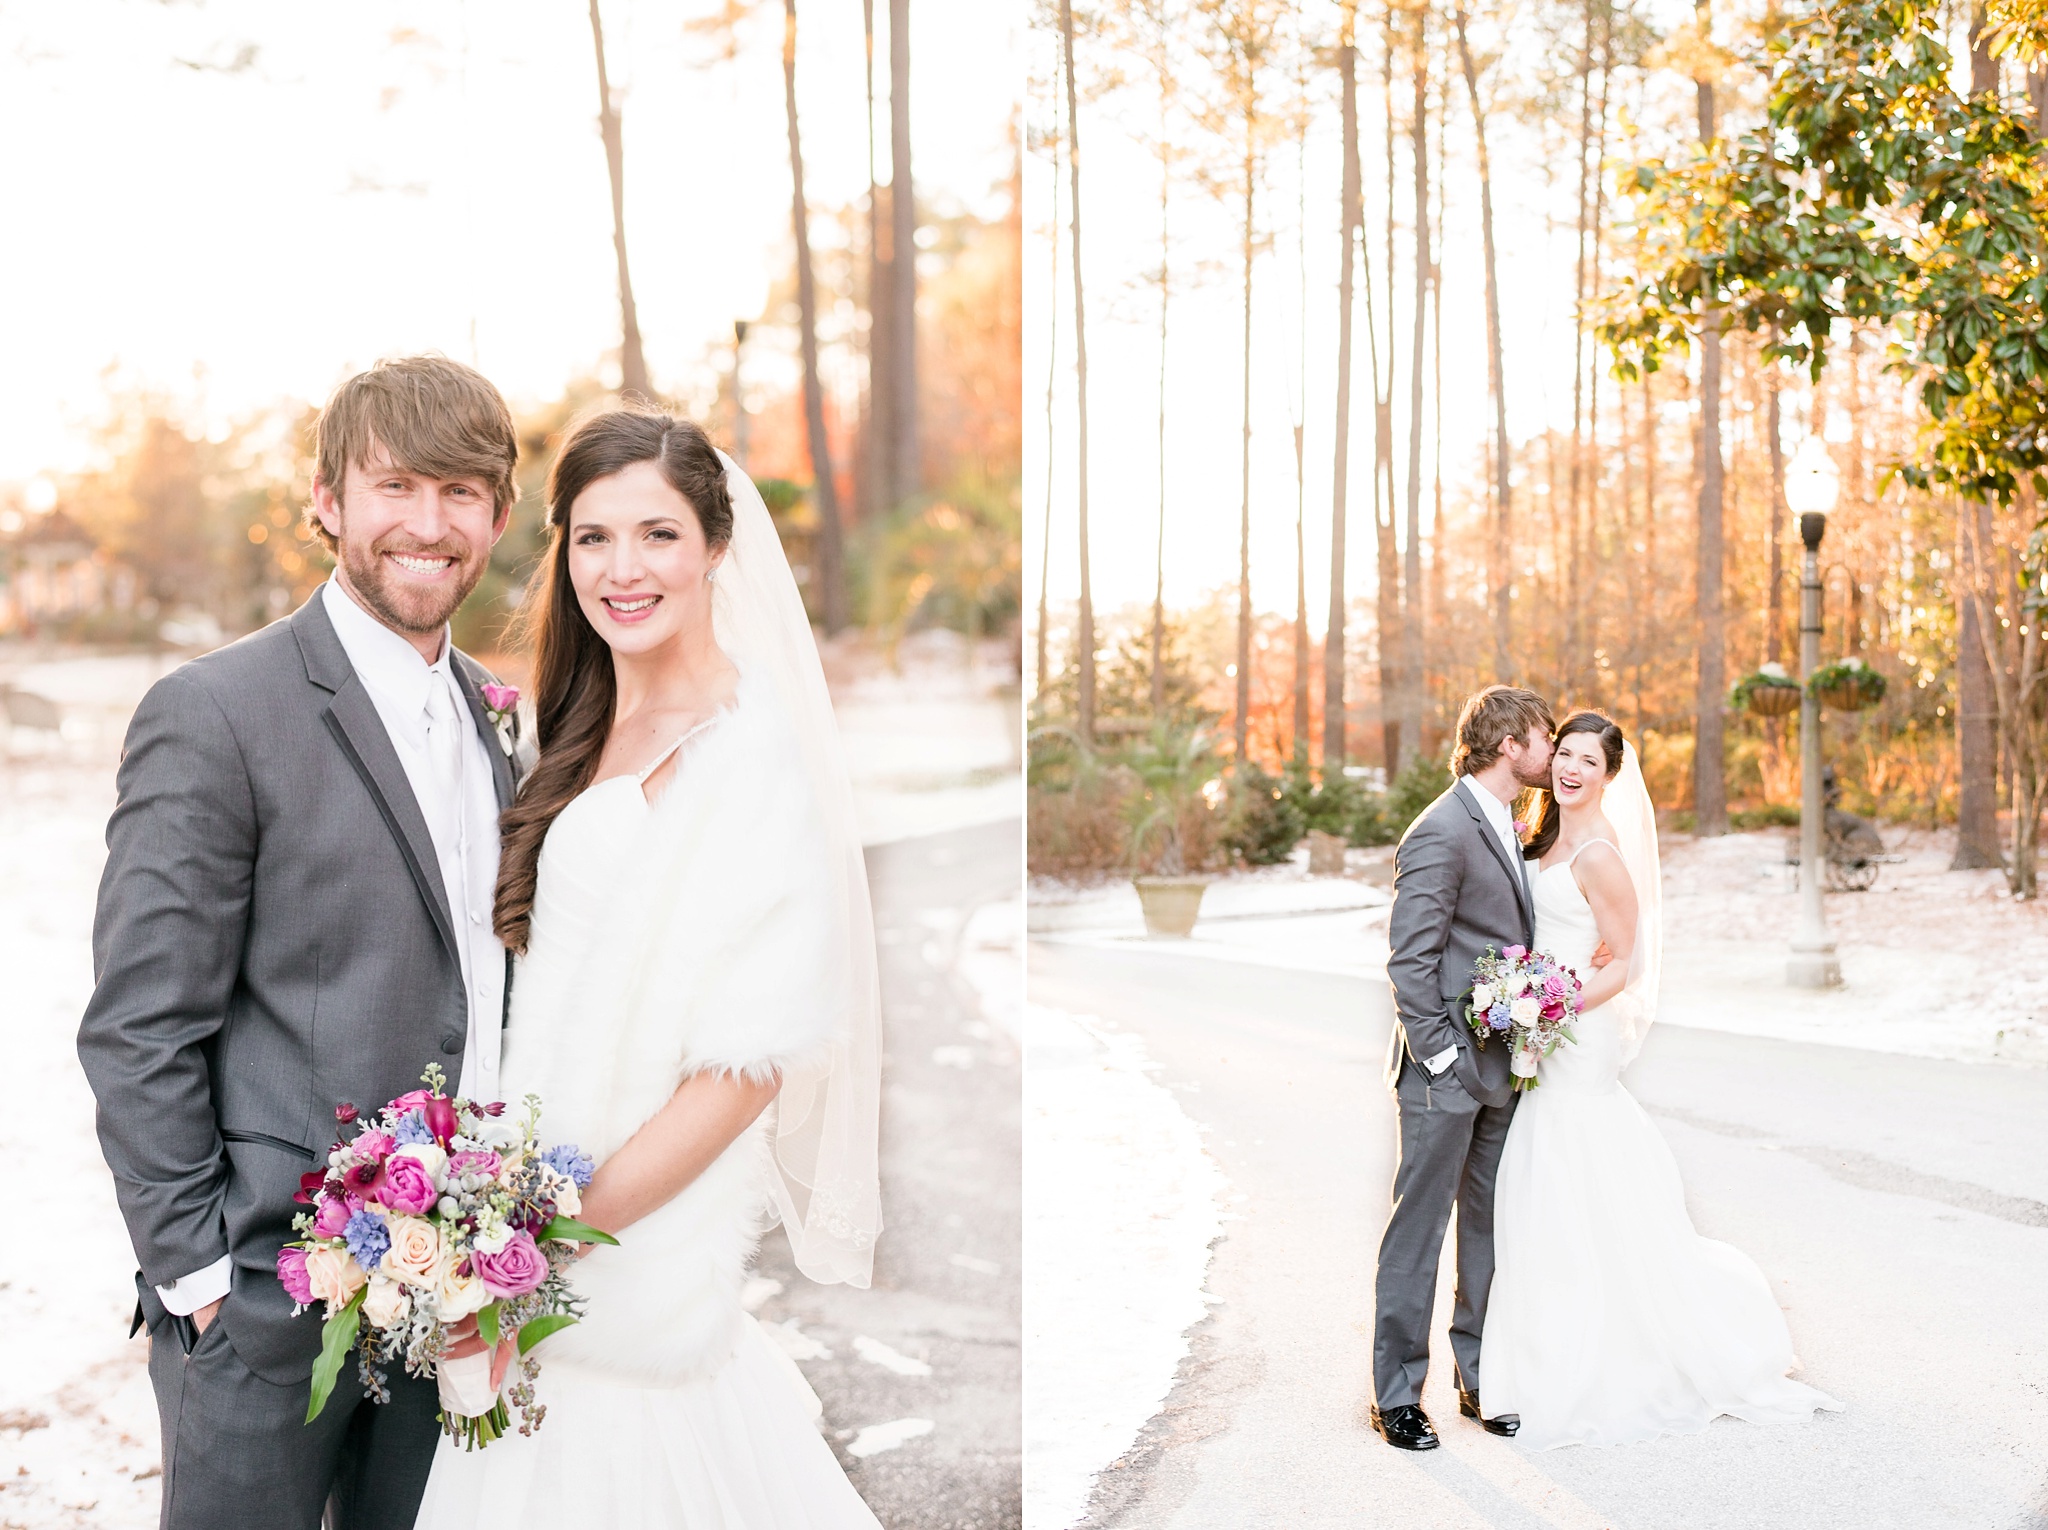 Snowy Winter Aldridge Gardens Wedding | Birmingham Alabama Wedding Photographers_0041.jpg